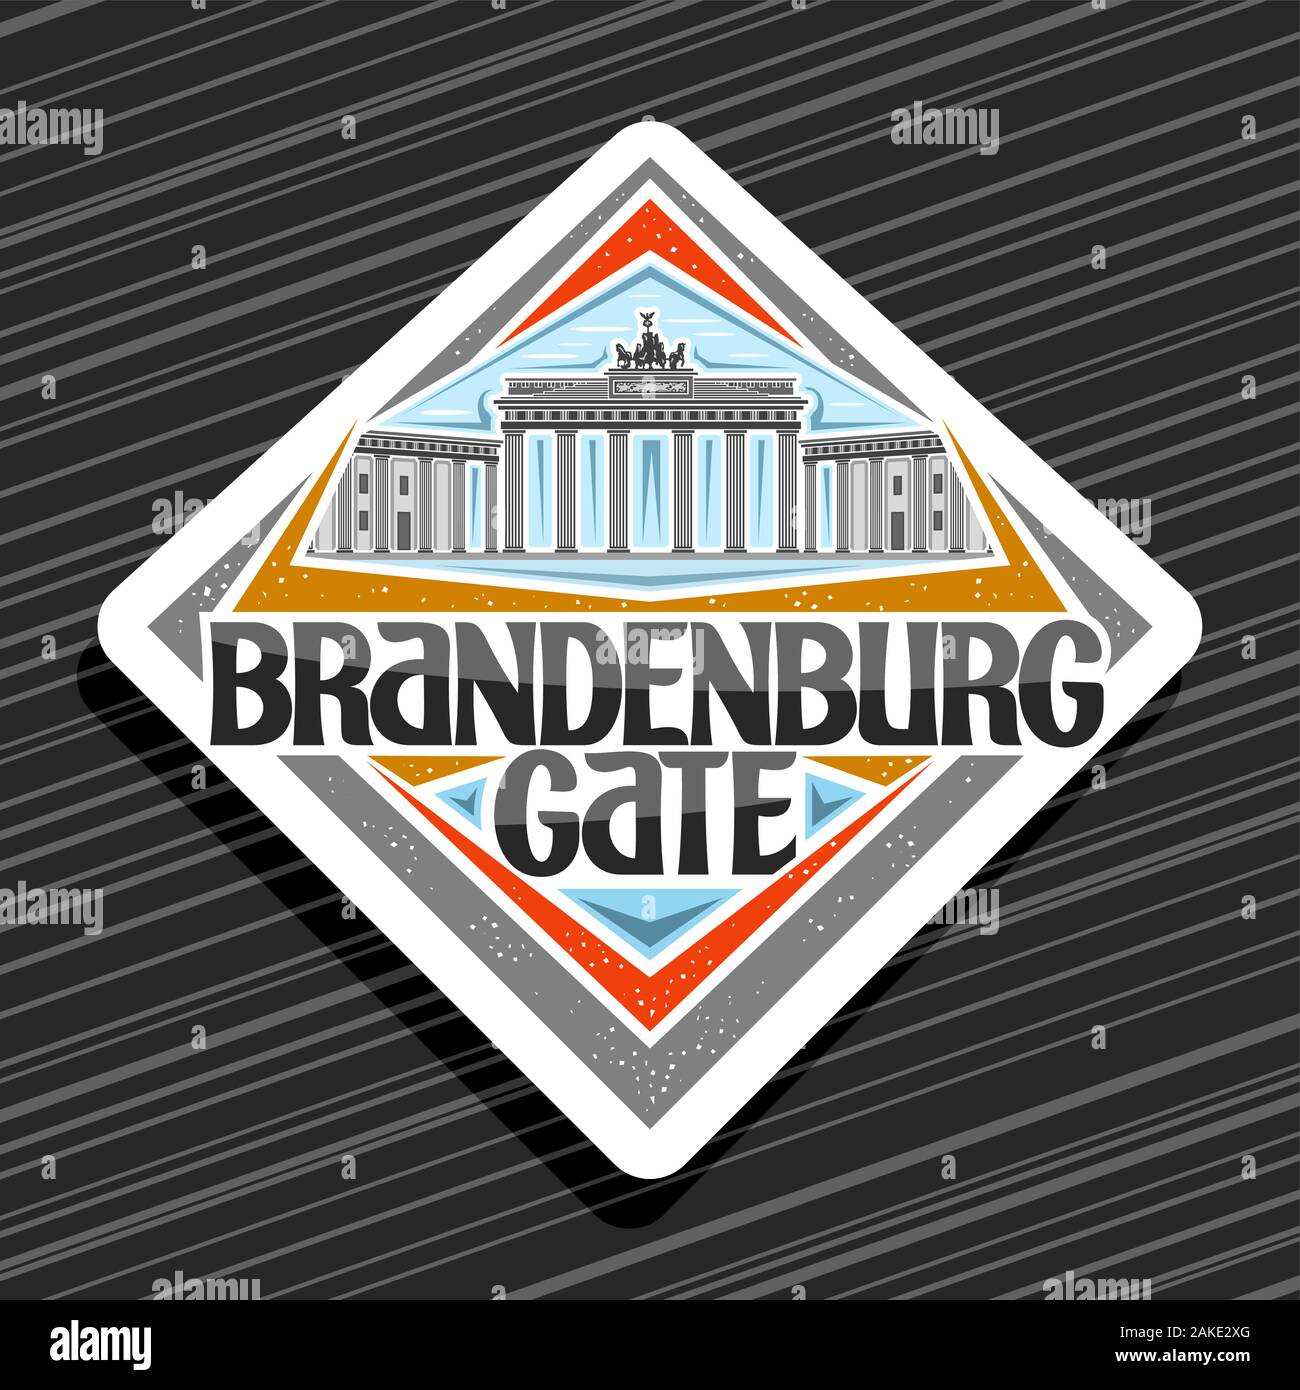 Vektor logo für Brandenburger Tor, weißen rhombus Abzeichen mit Abbildung der Wahrzeichen Berlins an bewölkten Himmel Hintergrund, touristische dekorative Kühlschrank Magnet Stock Vektor